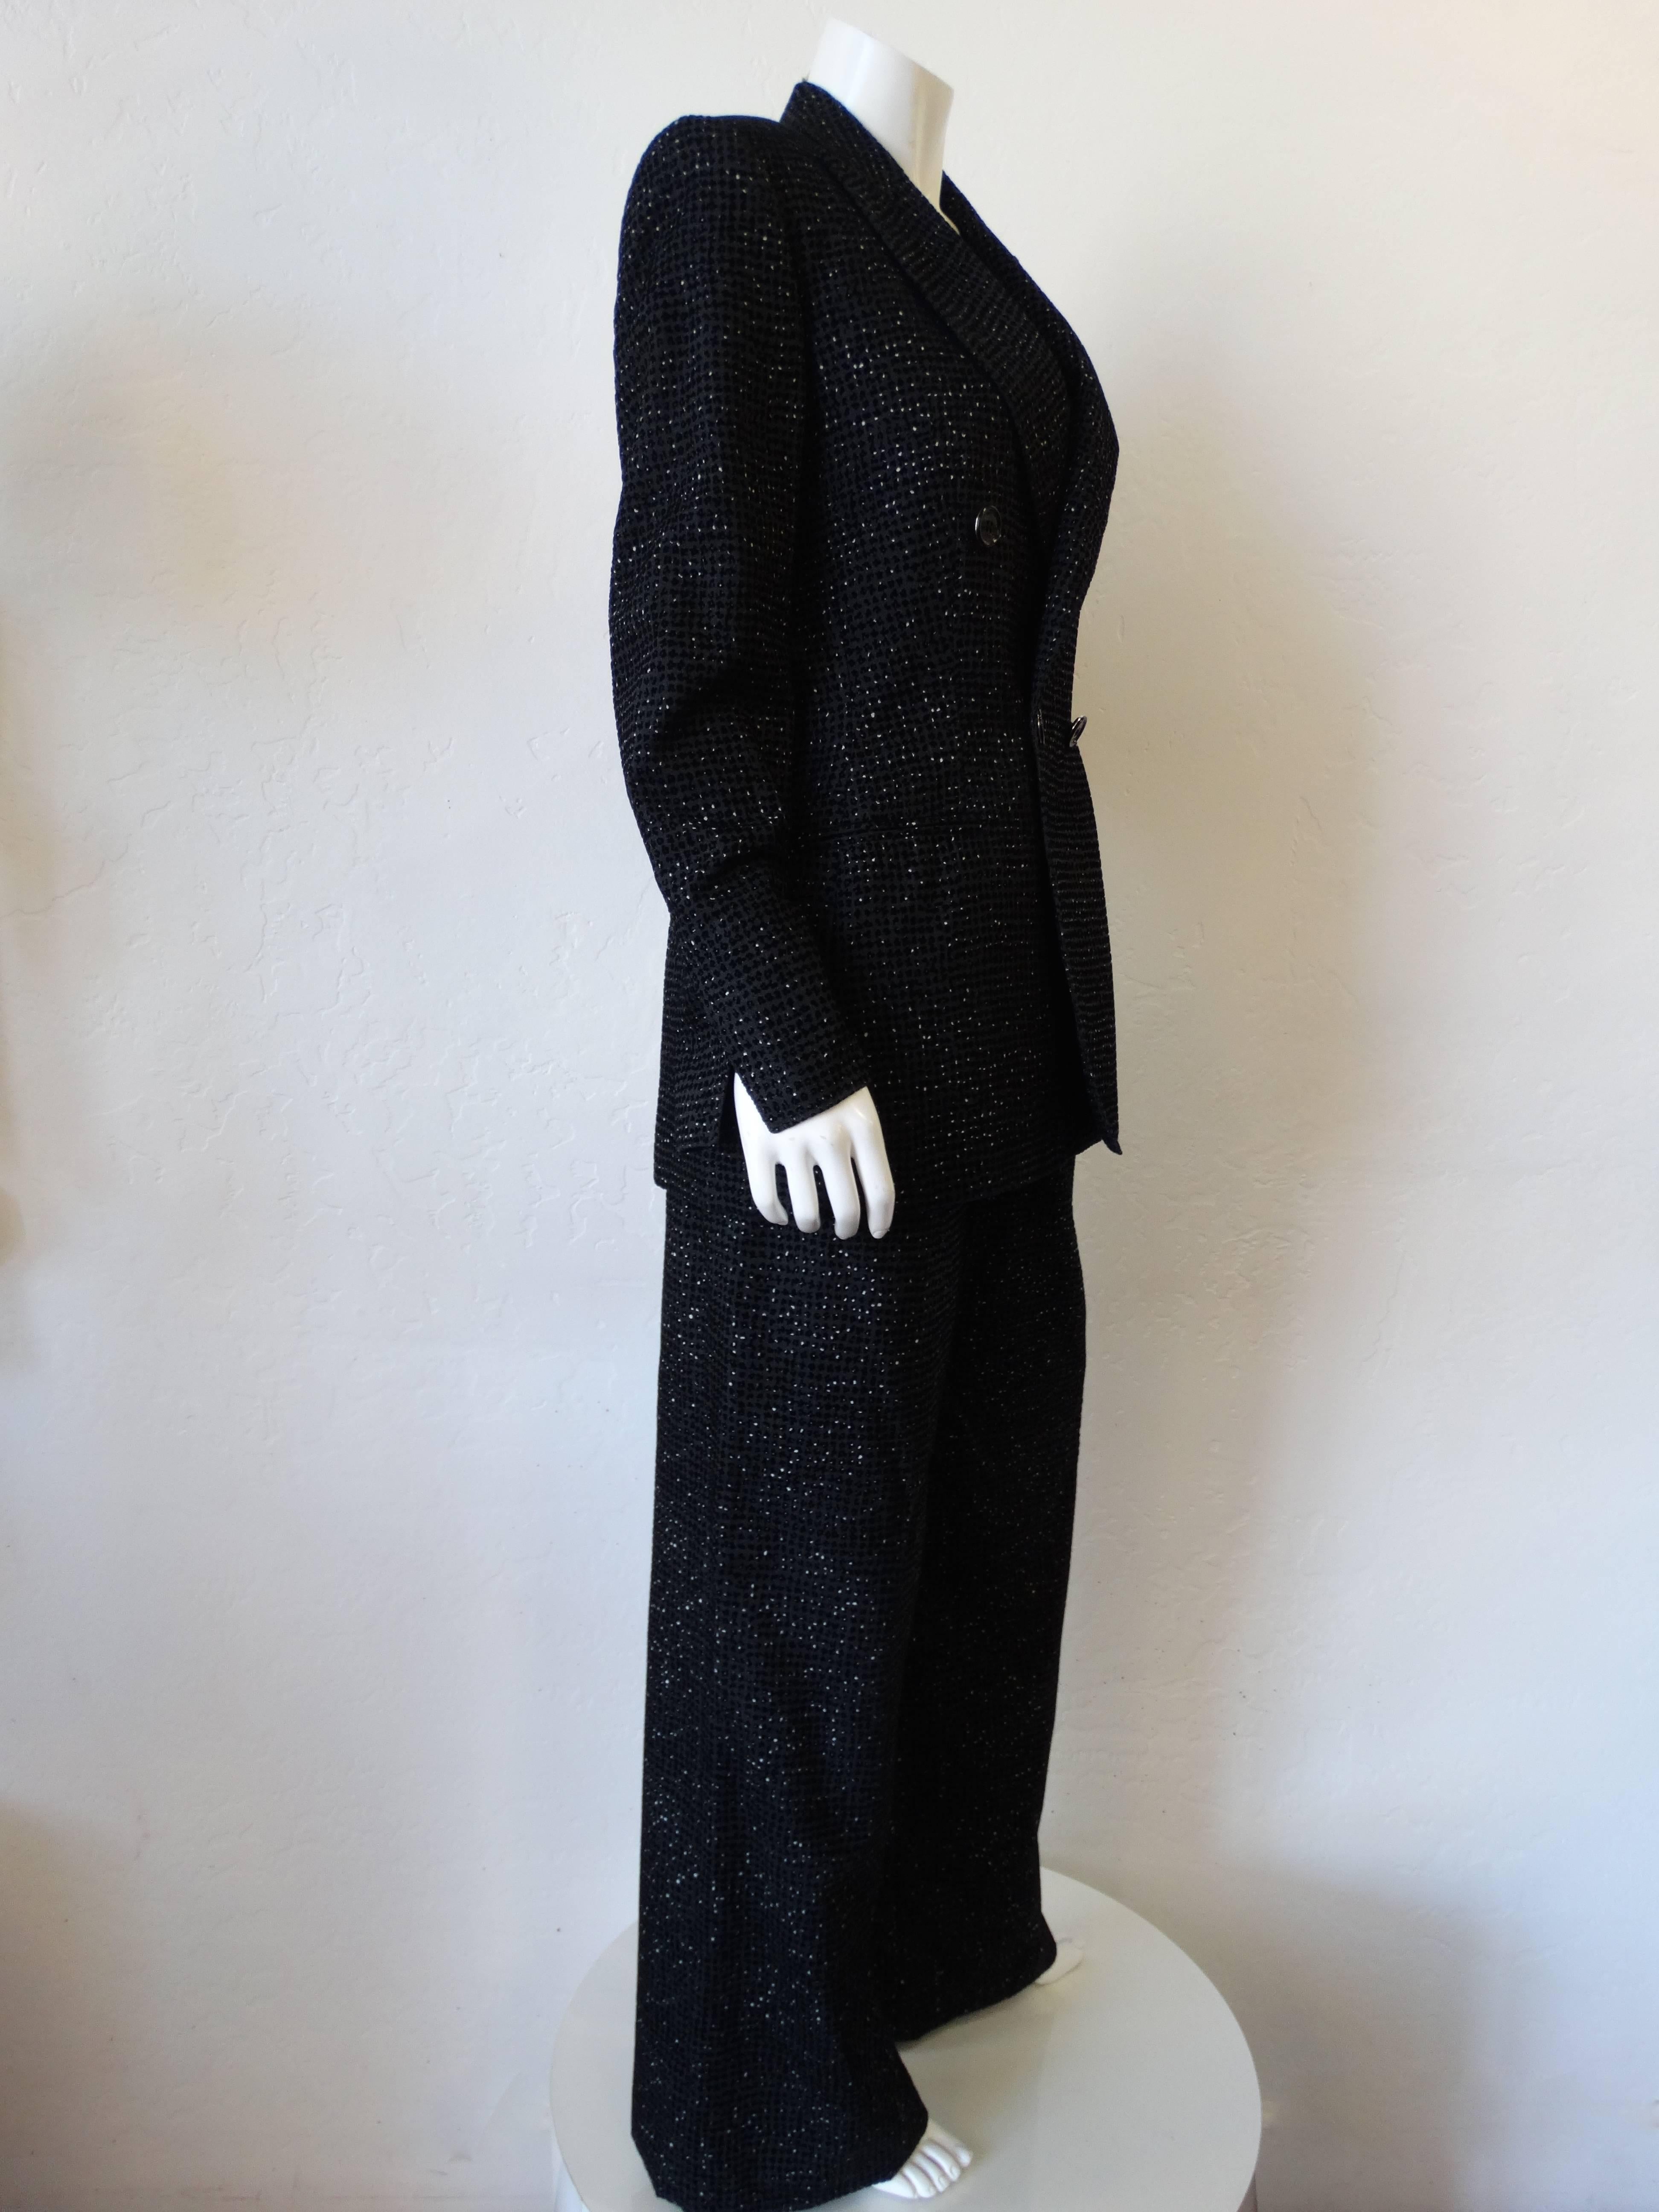 L'ensemble de costumes le plus chic des années 2000 de Gianfranco Ferre ! Fabriqué dans un tissu unique semblable au tweed et rehaussé de boutons noirs brillants. Blazer solidement épaulé avec une coupe à double boutonnage. Pantalon taille haute à